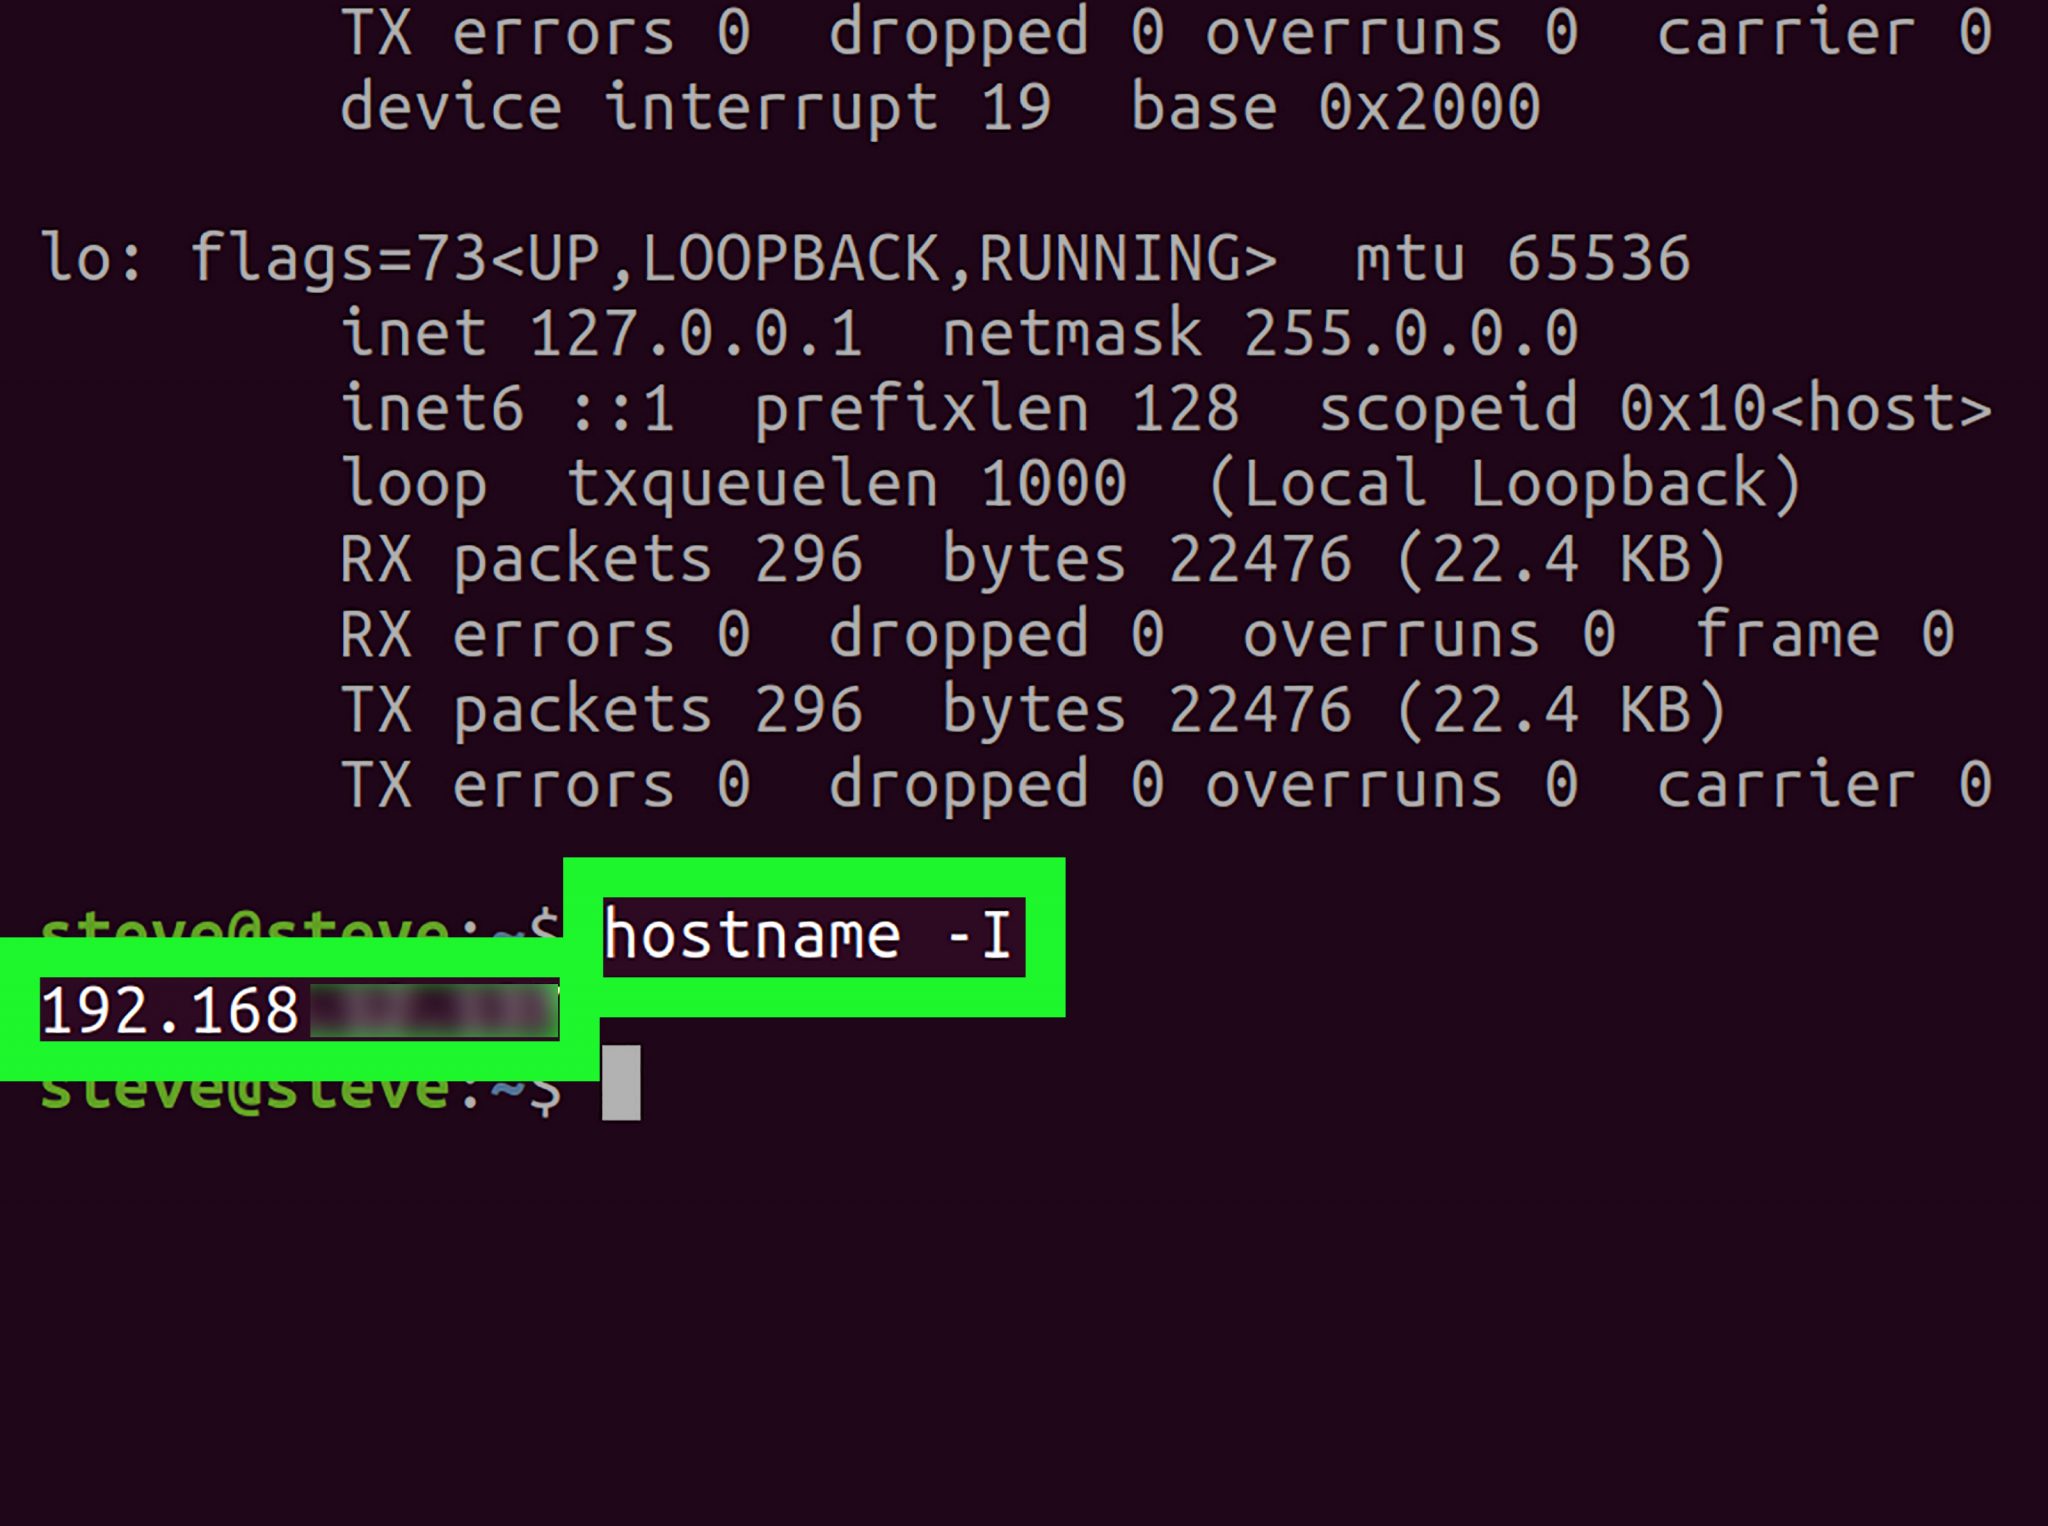 ip address assign linux